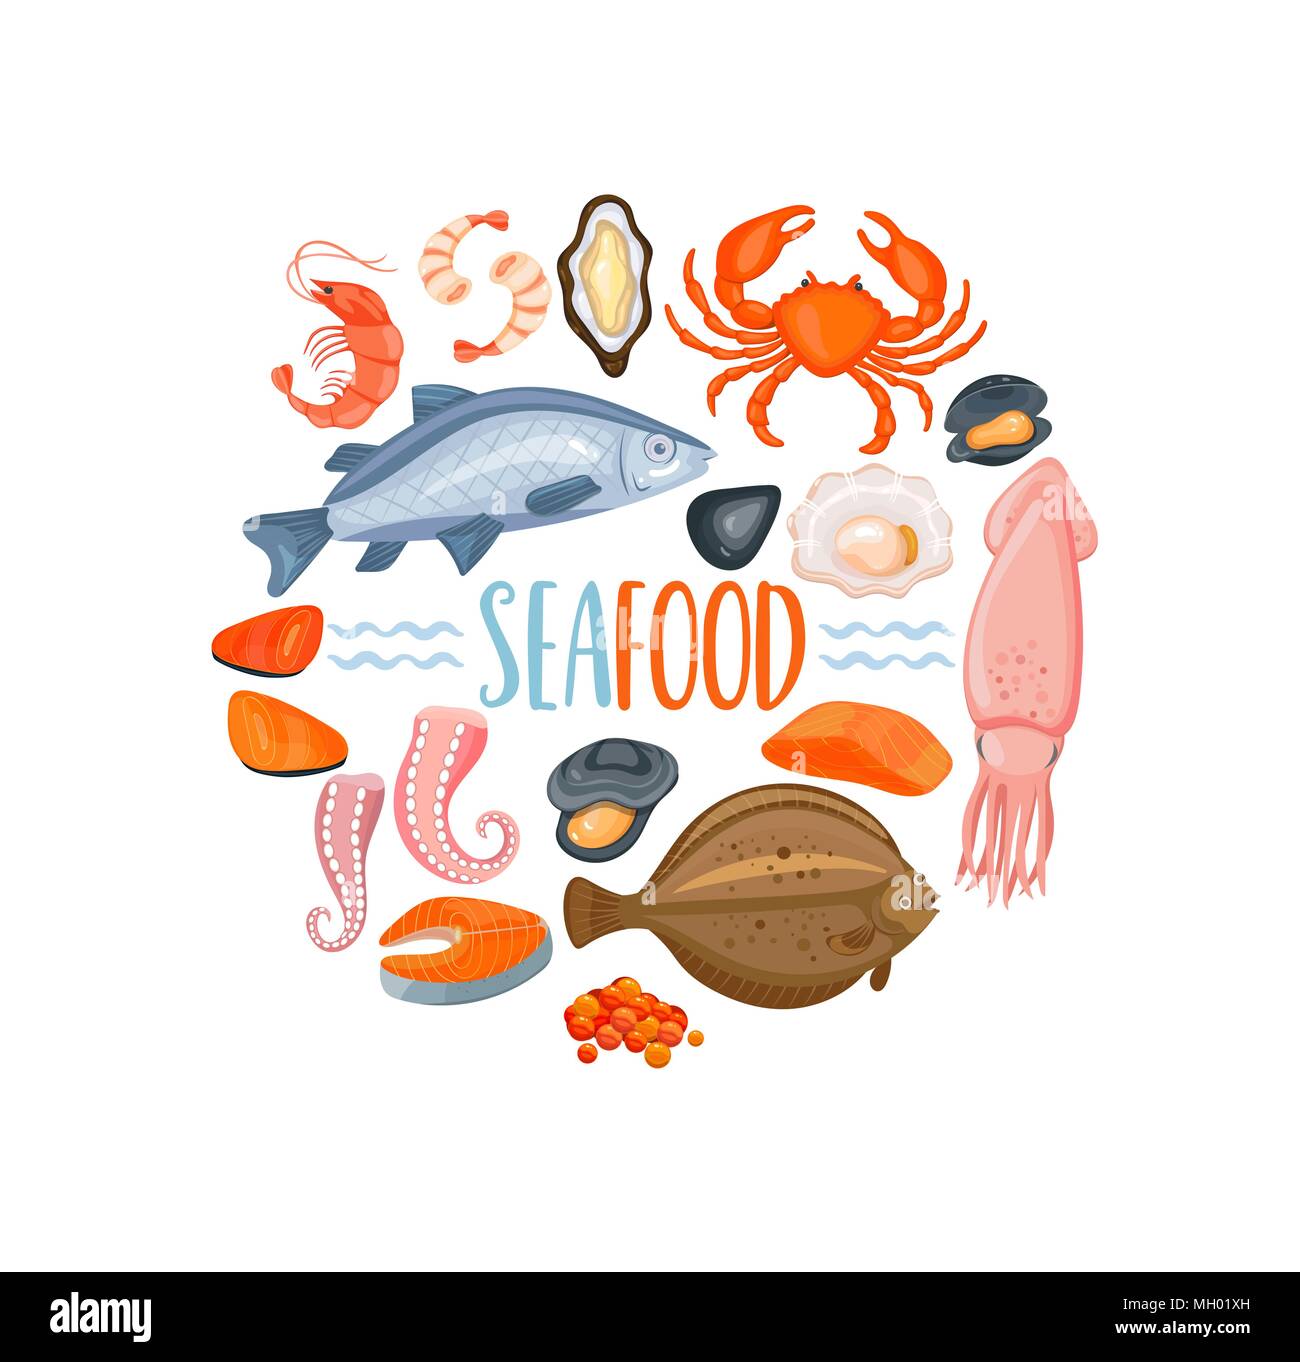 Ensemble d'icônes de style seafod cartoon, illustration vectorielle. Les crustacés, d'huîtres et le crabe, le saumon, les crevettes et les poulpes, crevettes, moules, flet, poissons de mer, Illustration de Vecteur